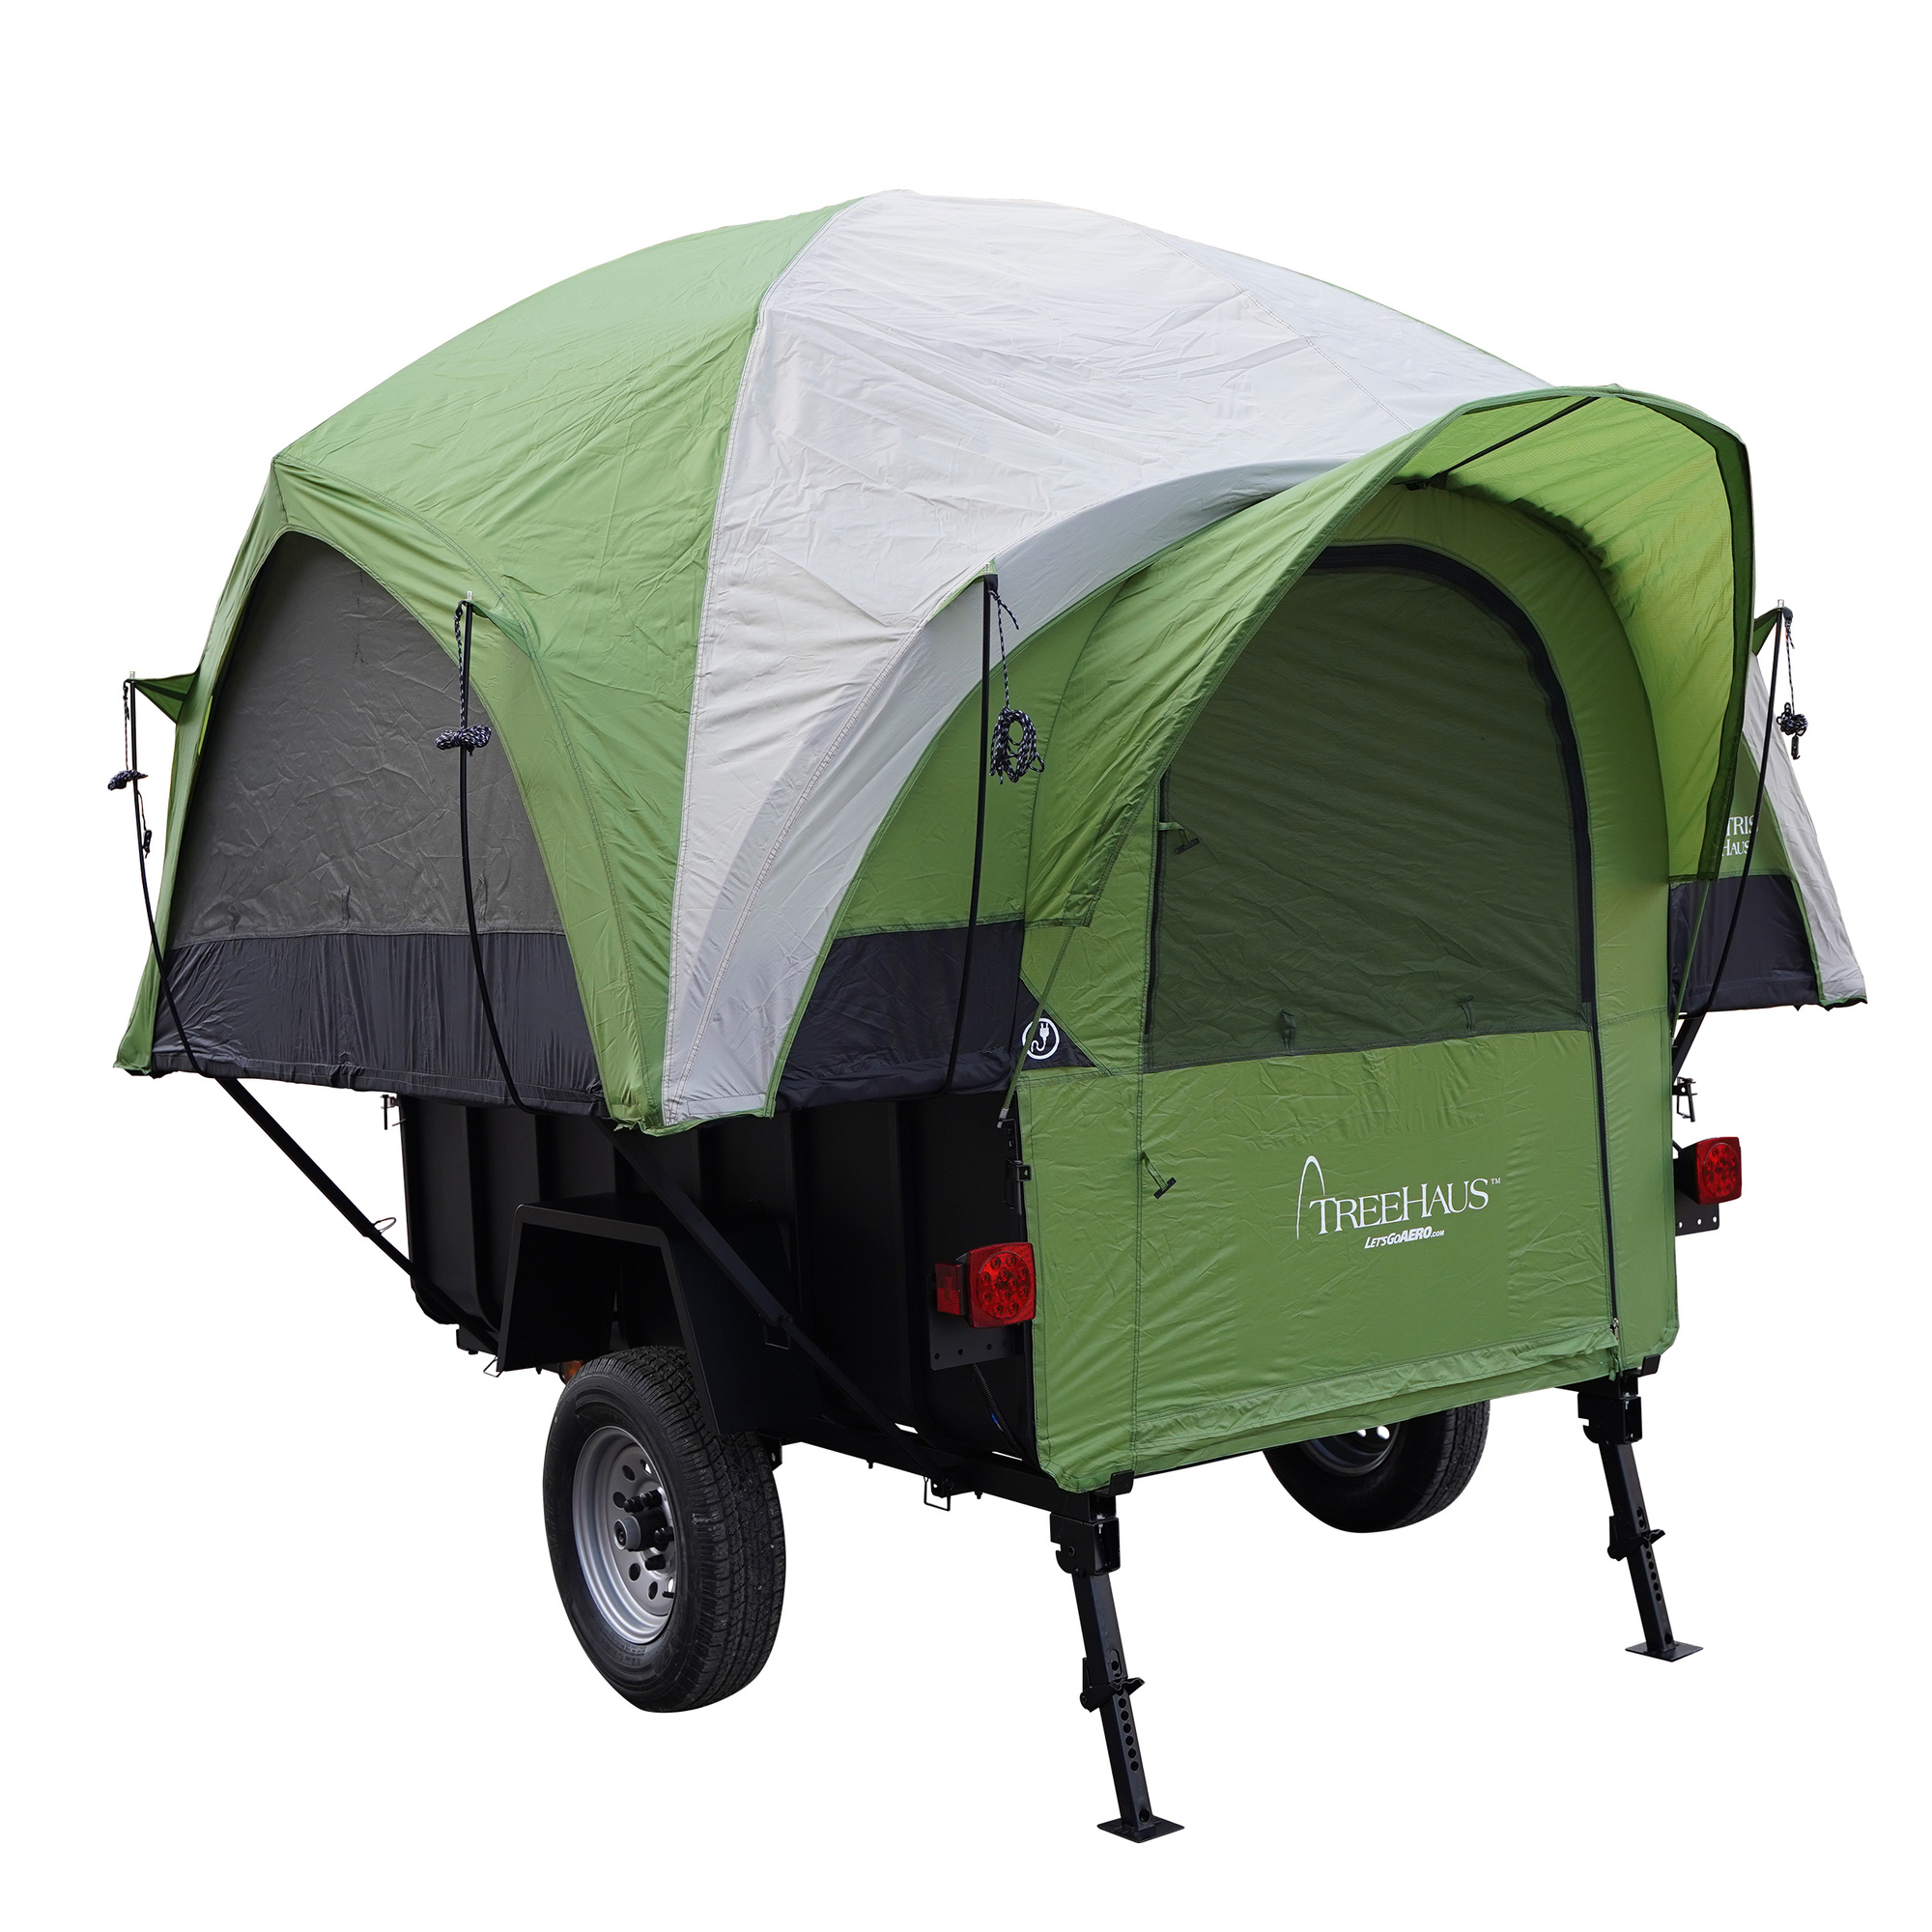 Let's Go Aero, LittleGiant TreeHaus Camping Trailer, Length 10 ft, Width 8 ft, Sleeps 4, Model T02035-01984